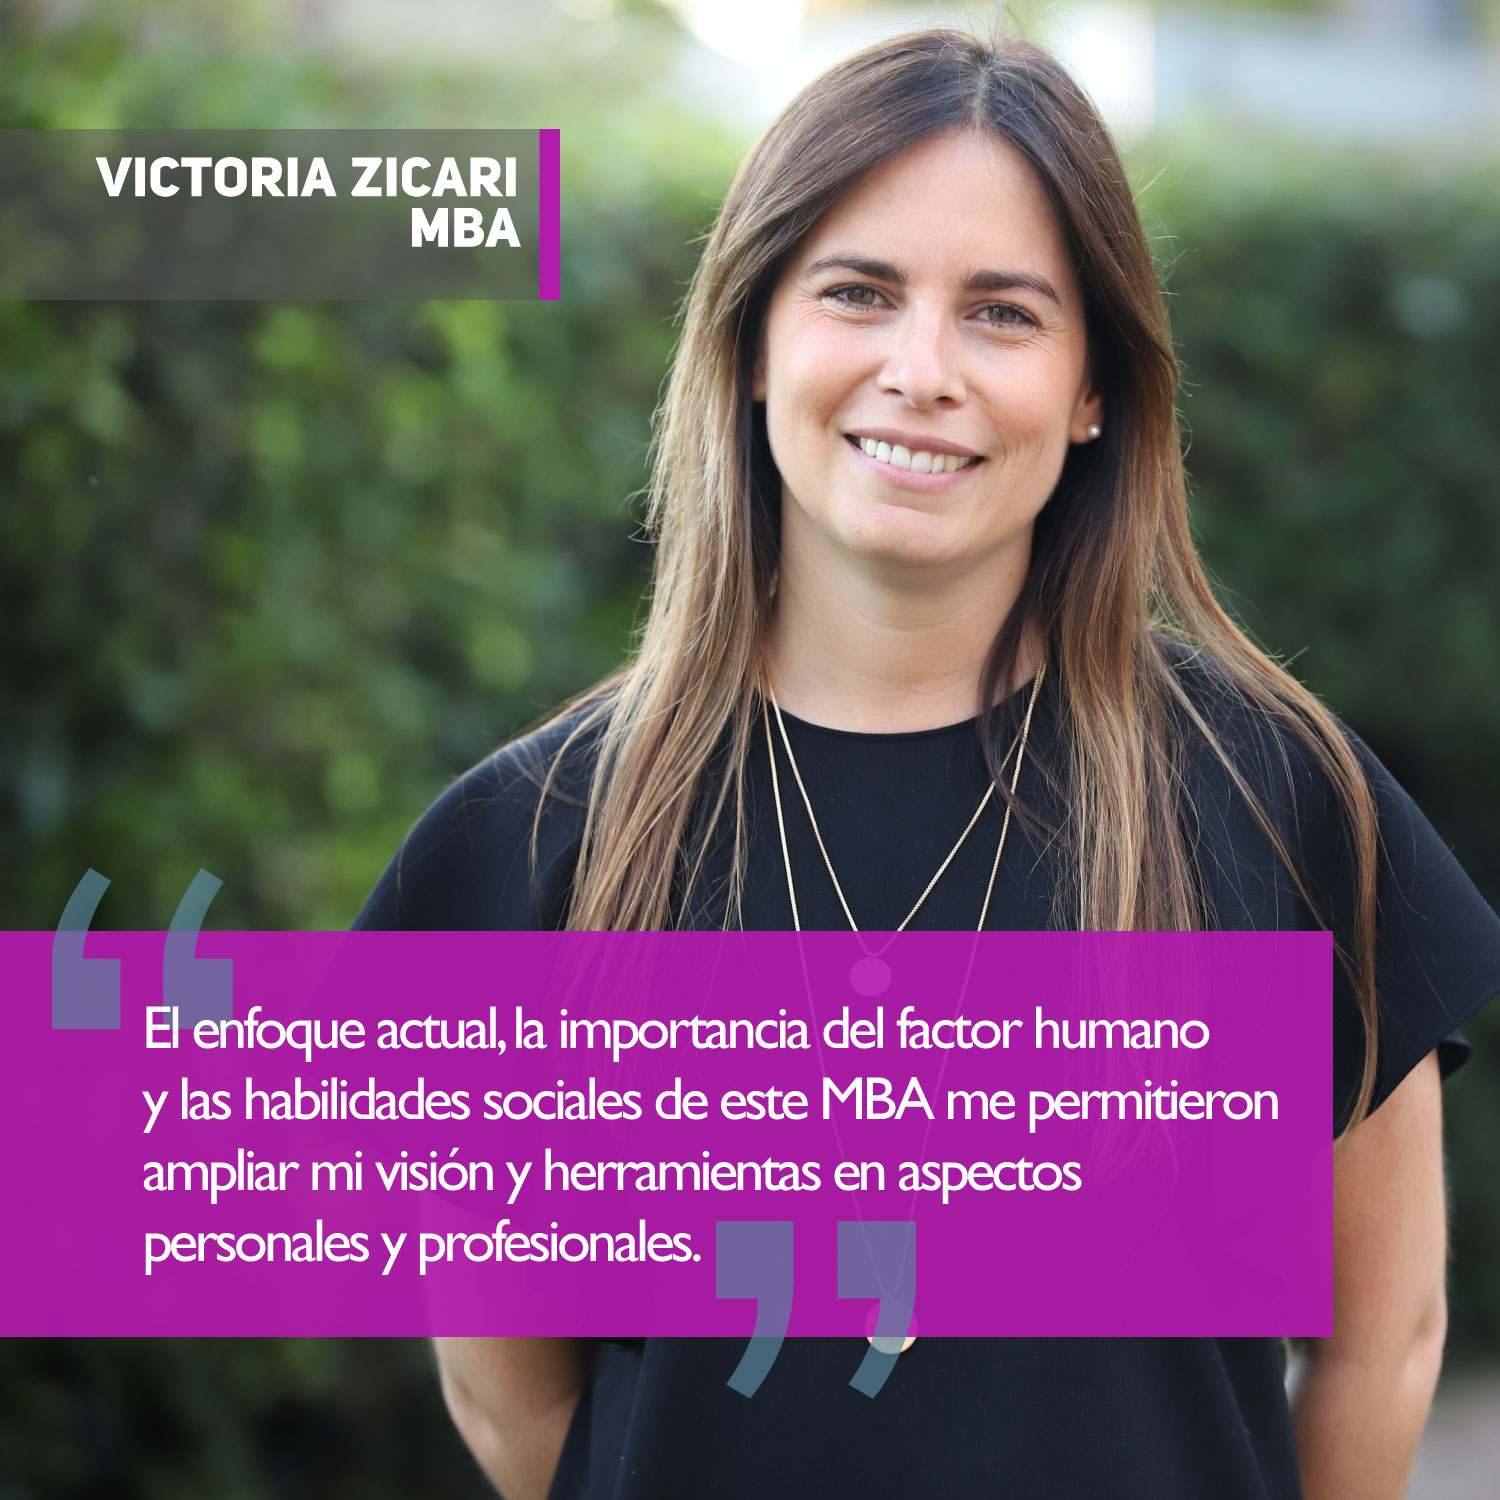 Victoria Zicari